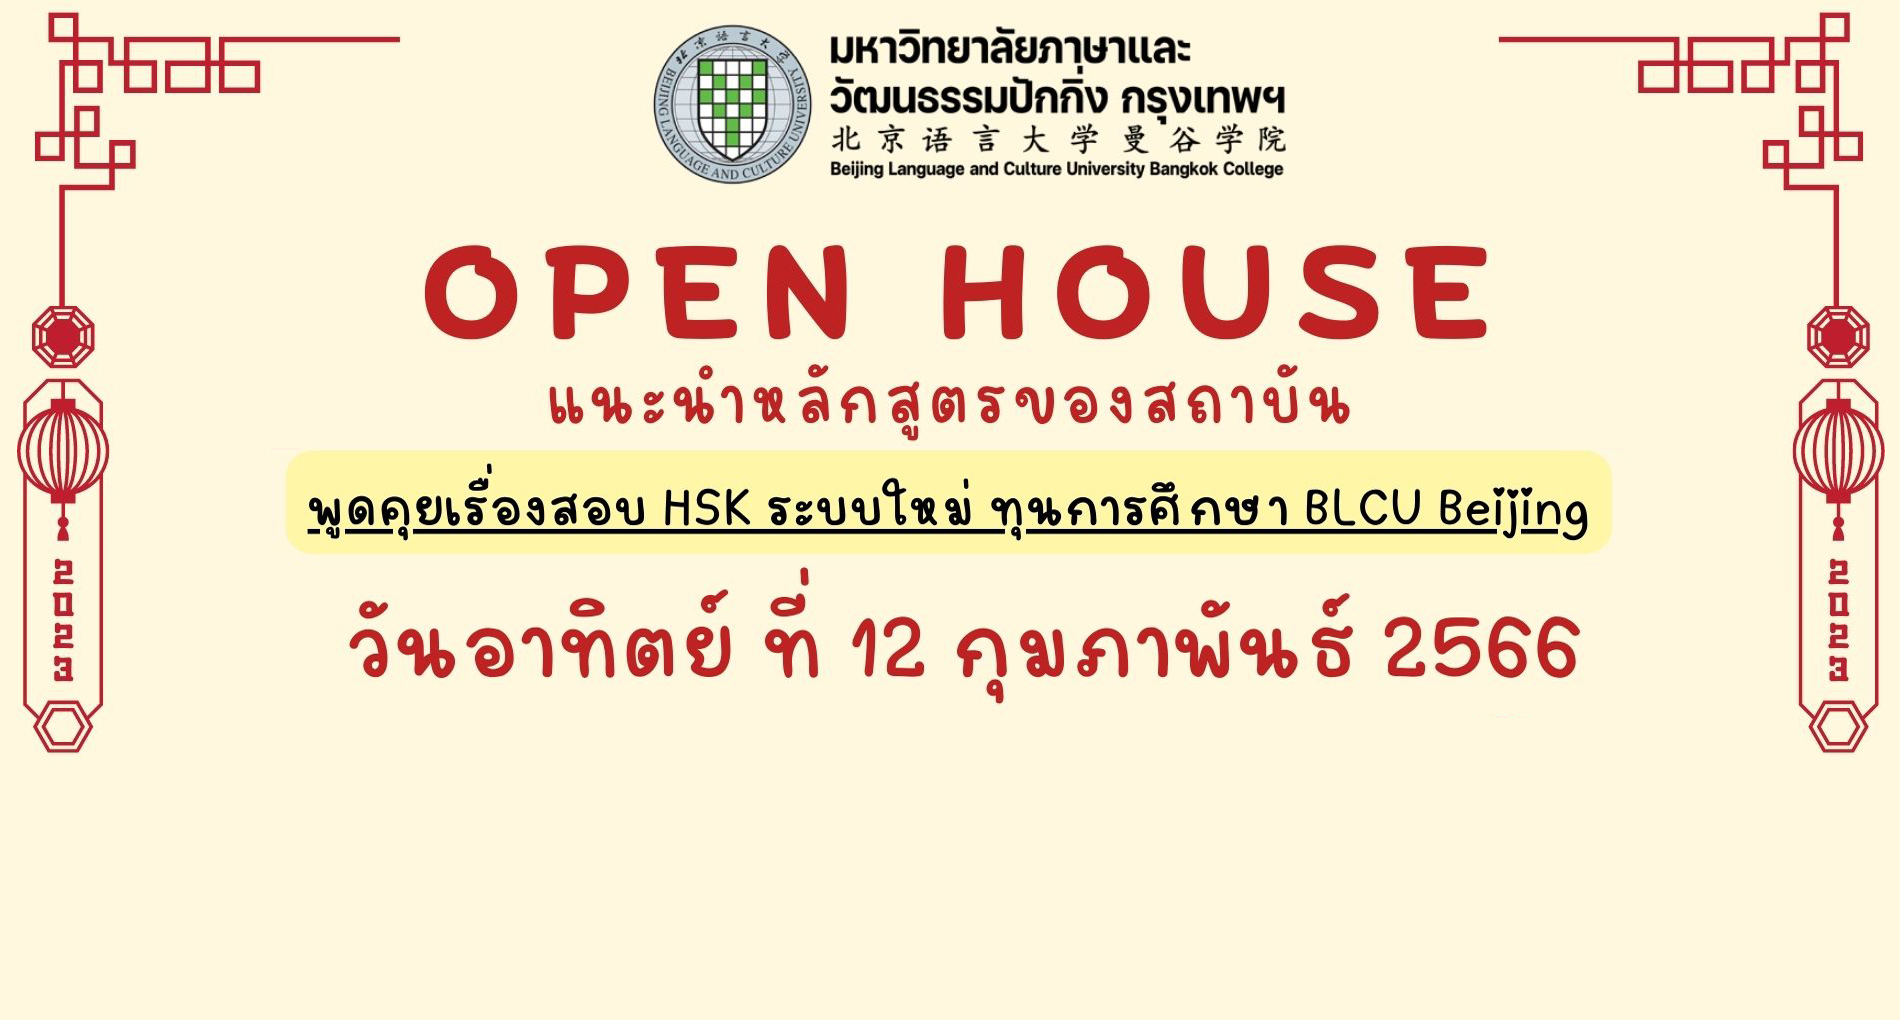 BLCU Bangkok ขอเชิญชวนเข้าร่วมกิจกรรม Open House แนะนำรายละเอียดหลักสูตรต่างๆ ของสถาบัน